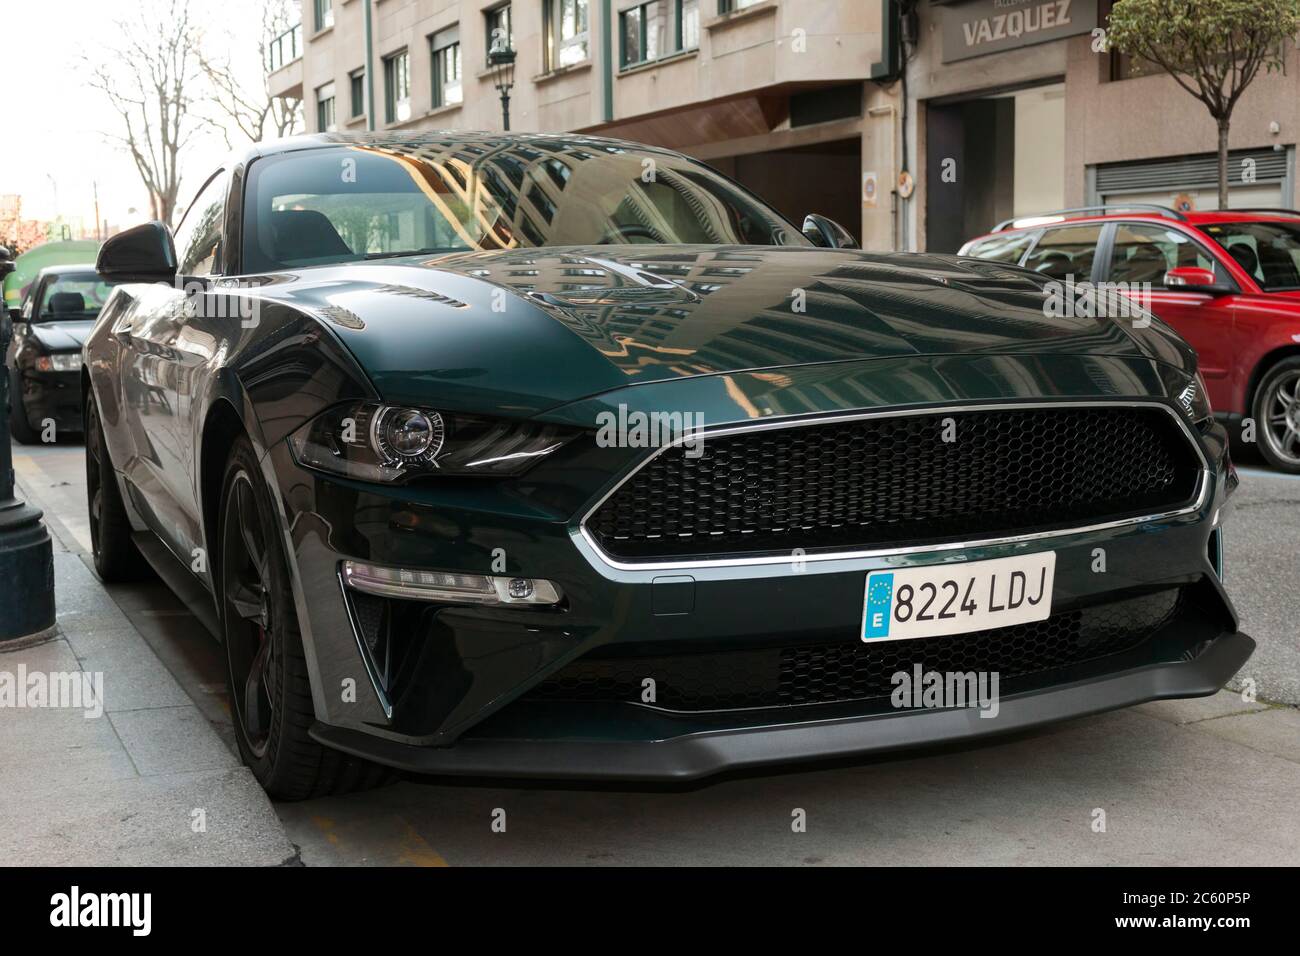 Vue de face d'un Ford Mustang Bullitt 2020 garés dans la rue le 18 février 2020 à Vigo ville, Pontevedra, Espagne. Banque D'Images